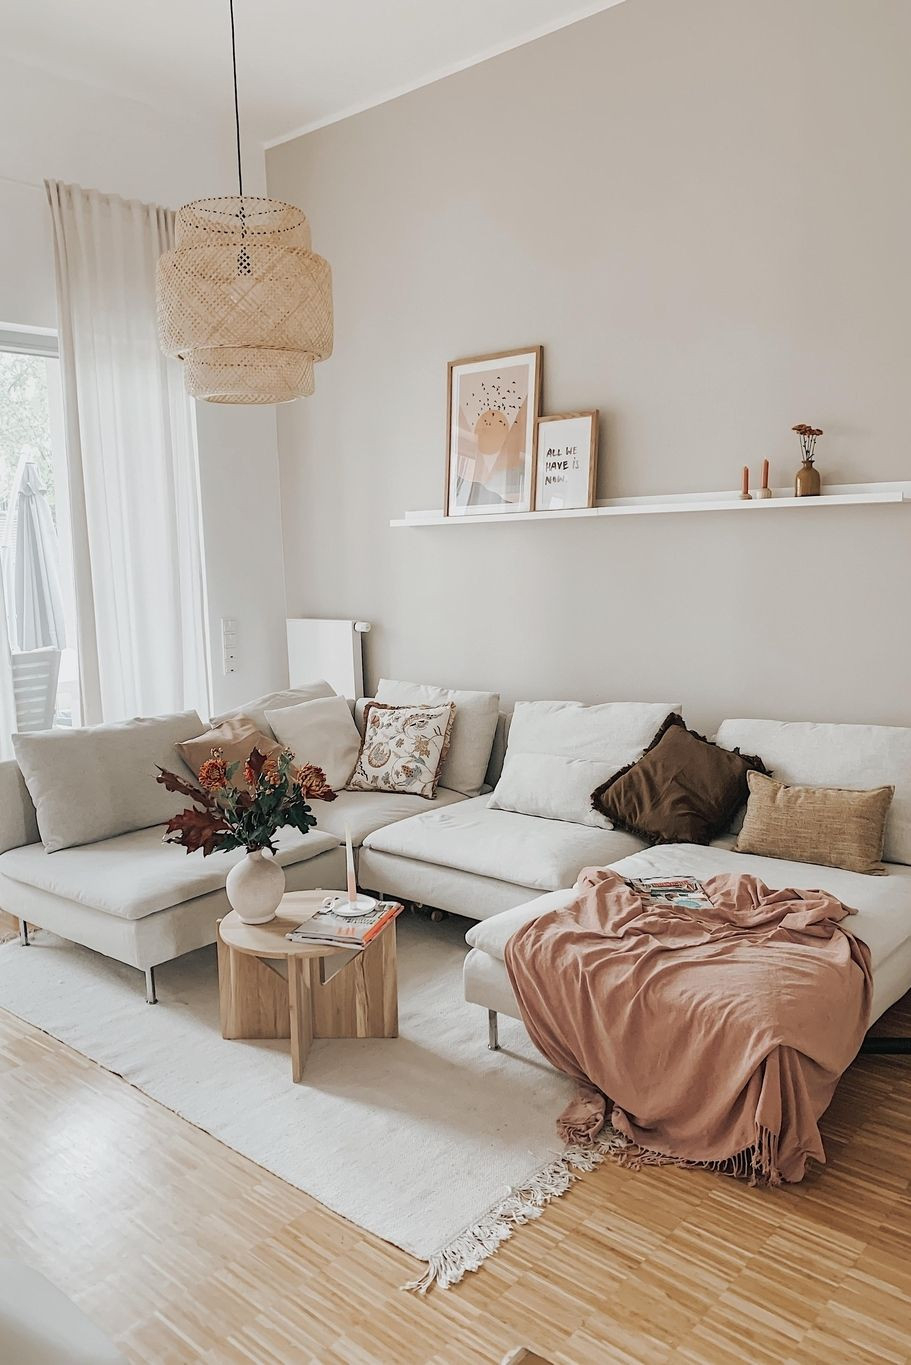 Happyweekend #Wohnzimmer #Hygge #Couchstyle | Wohnzimmer Ideen pertaining to Pinterest Wohnzimmer Ideen